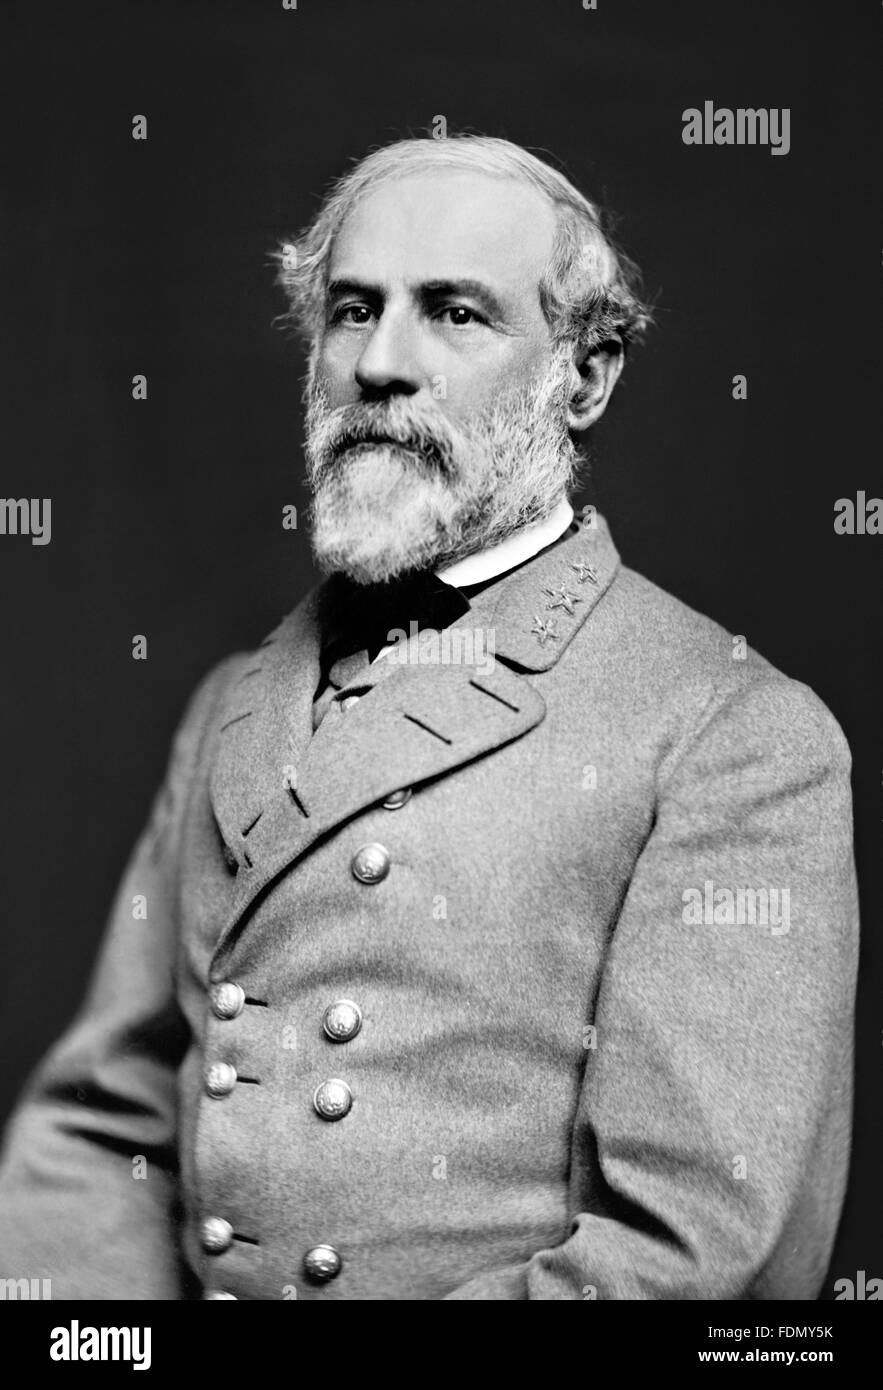 Robert E Lee. La guerra civil del Ejército Confederado General Robert E Lee. Foto por Julian Vannerso, marzo de 1864 Foto de stock